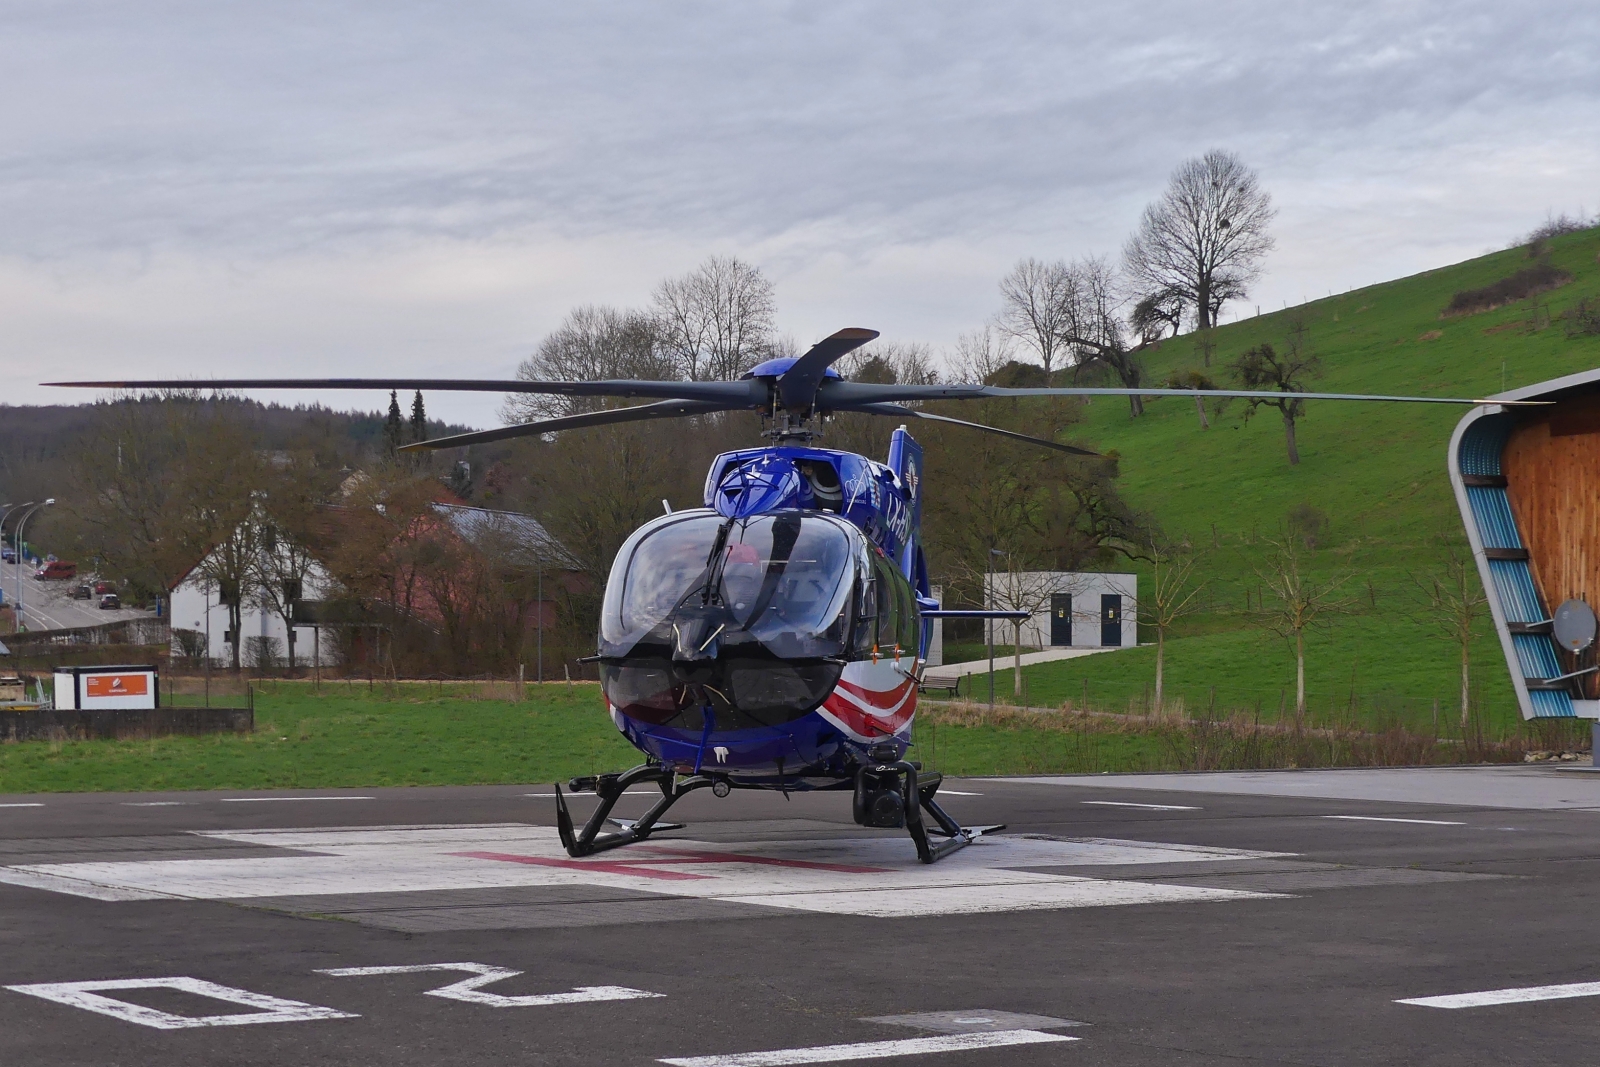 LAR Rettungshubschrauber LX-HSL, Airbus H145, steht am Krankenhaus in Ettelbrück zum Einsatz bereit. 02.2024
